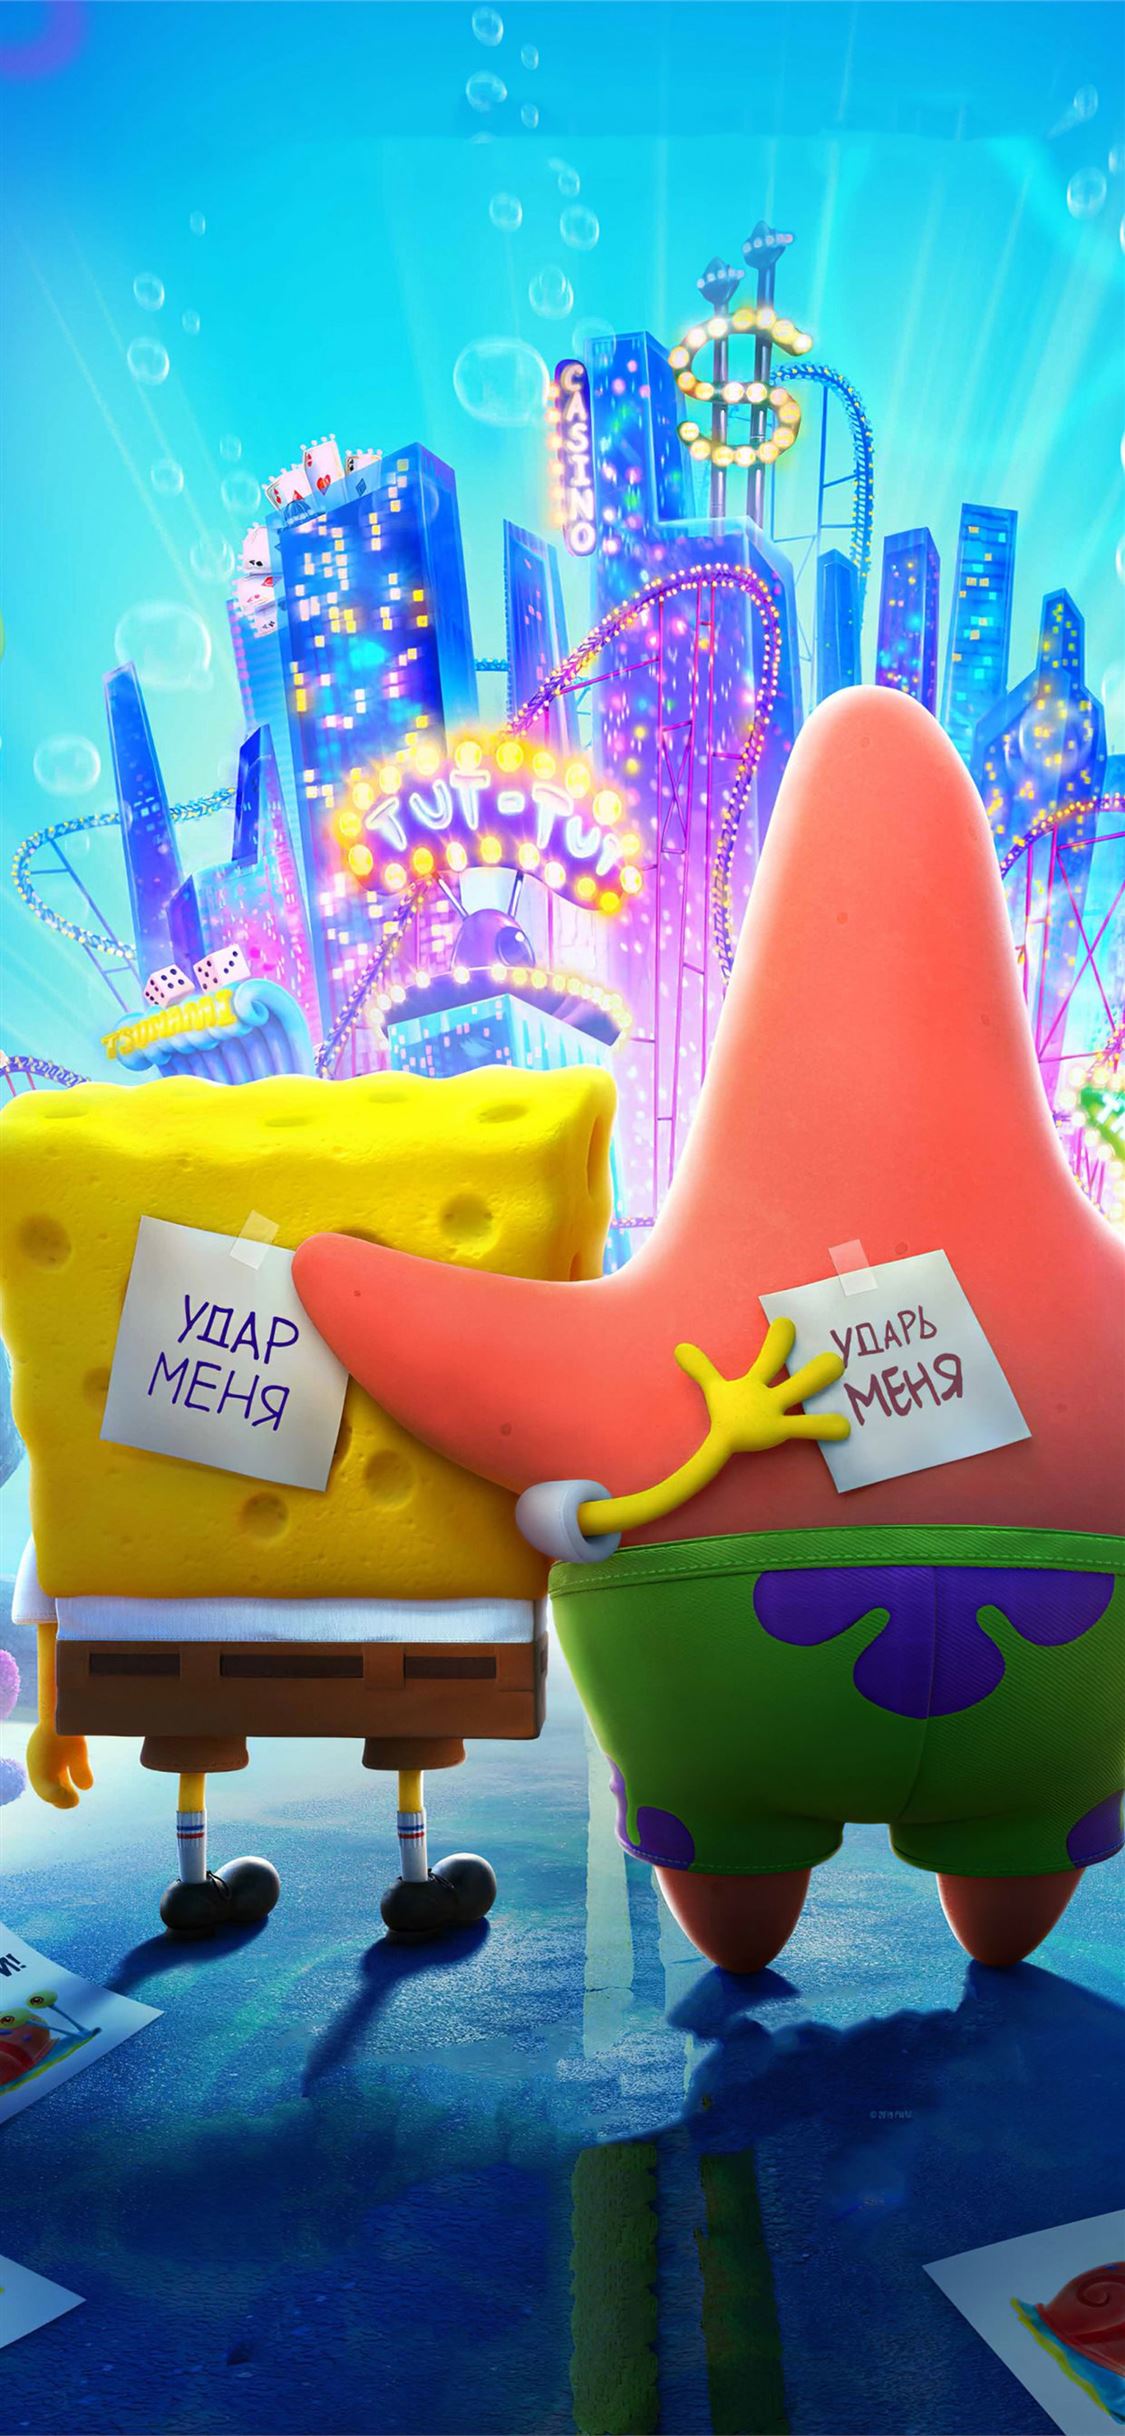 Best Spongebob iPhone X HD Wallpapers